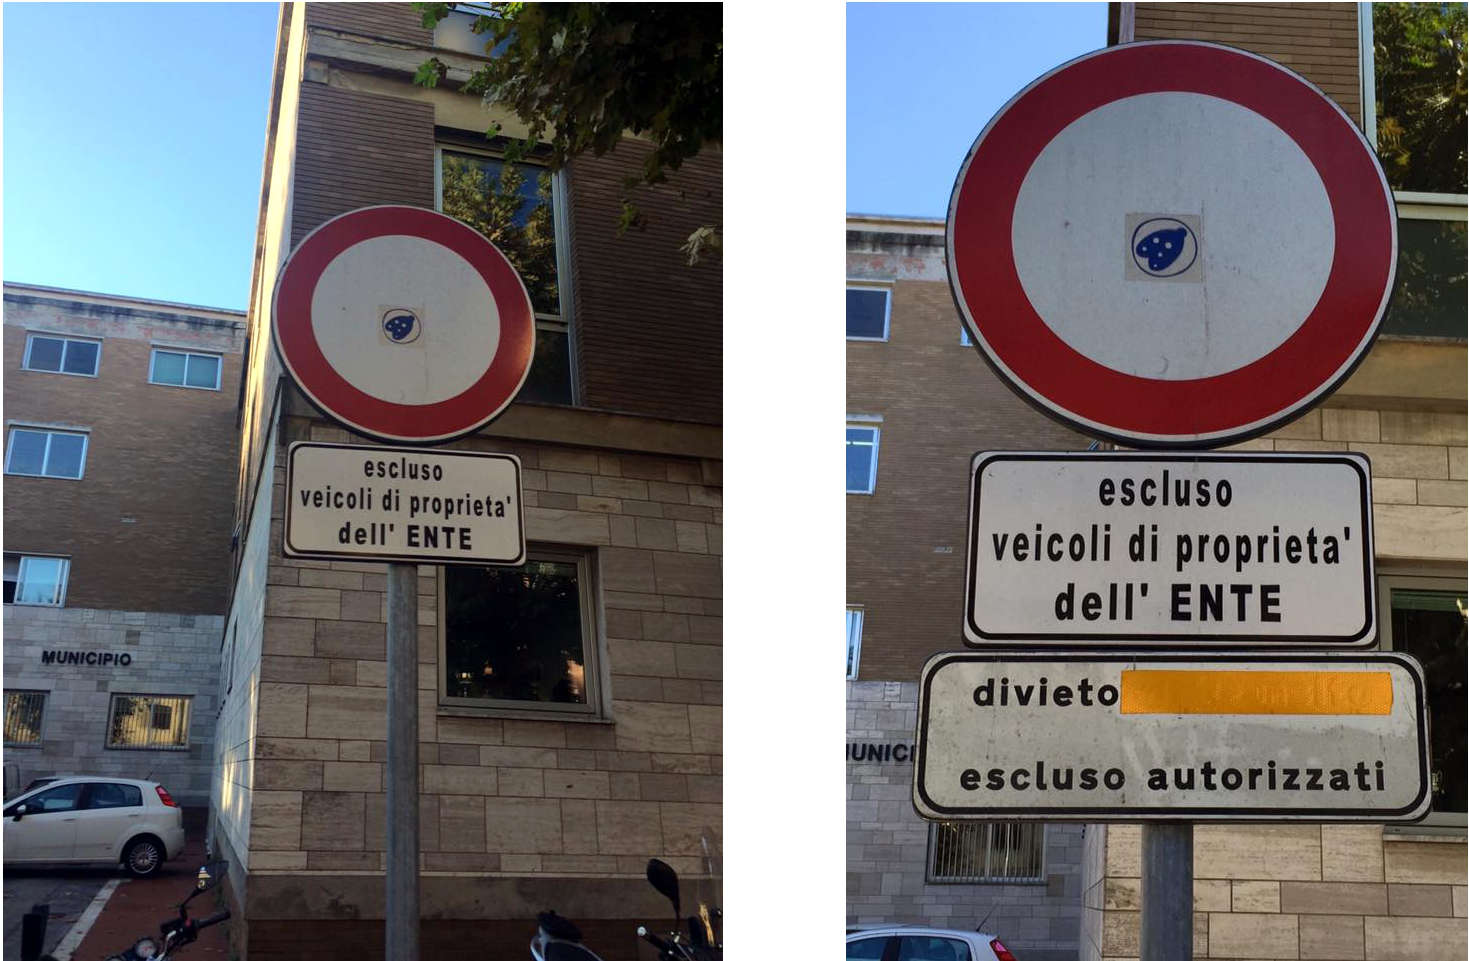 “Del Ghingaro parcheggia in sosta vietata e fa modificare la segnaletica. Pagherà la multa?”